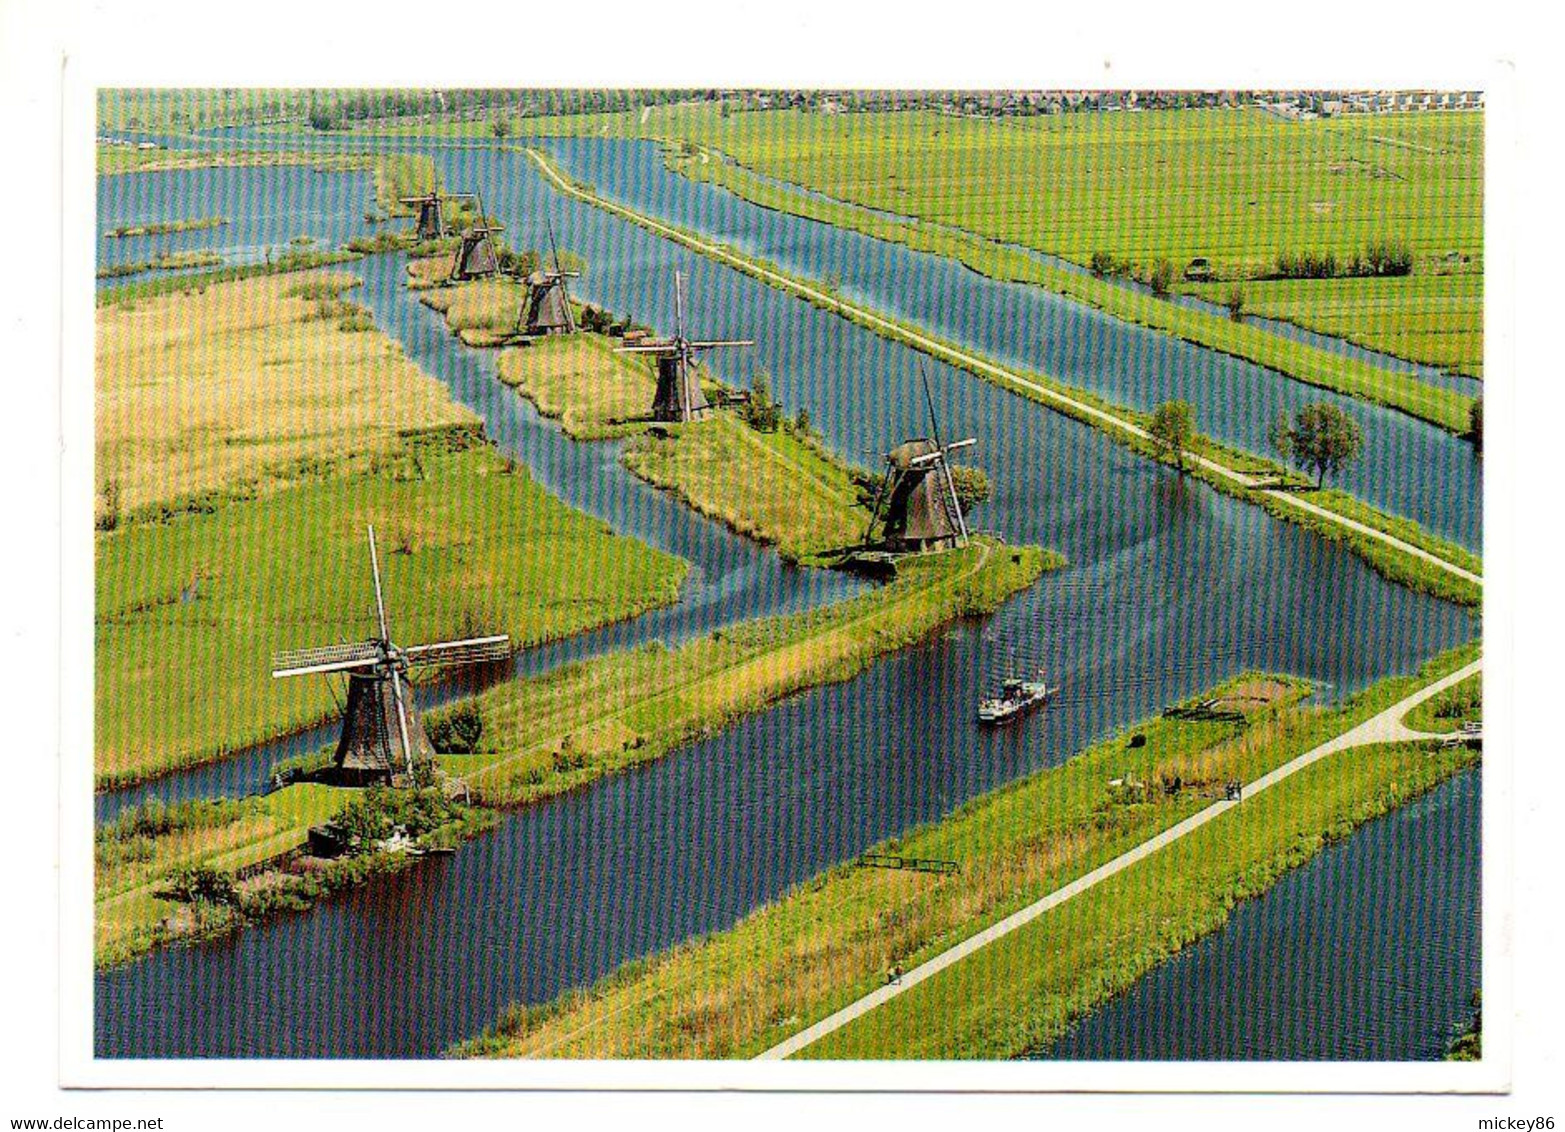 1999--Vue Aérienne D'un Paysage De Moulins à Vent Aux Pays-Bas ....timbre...cachet.......à Saisir - Molens